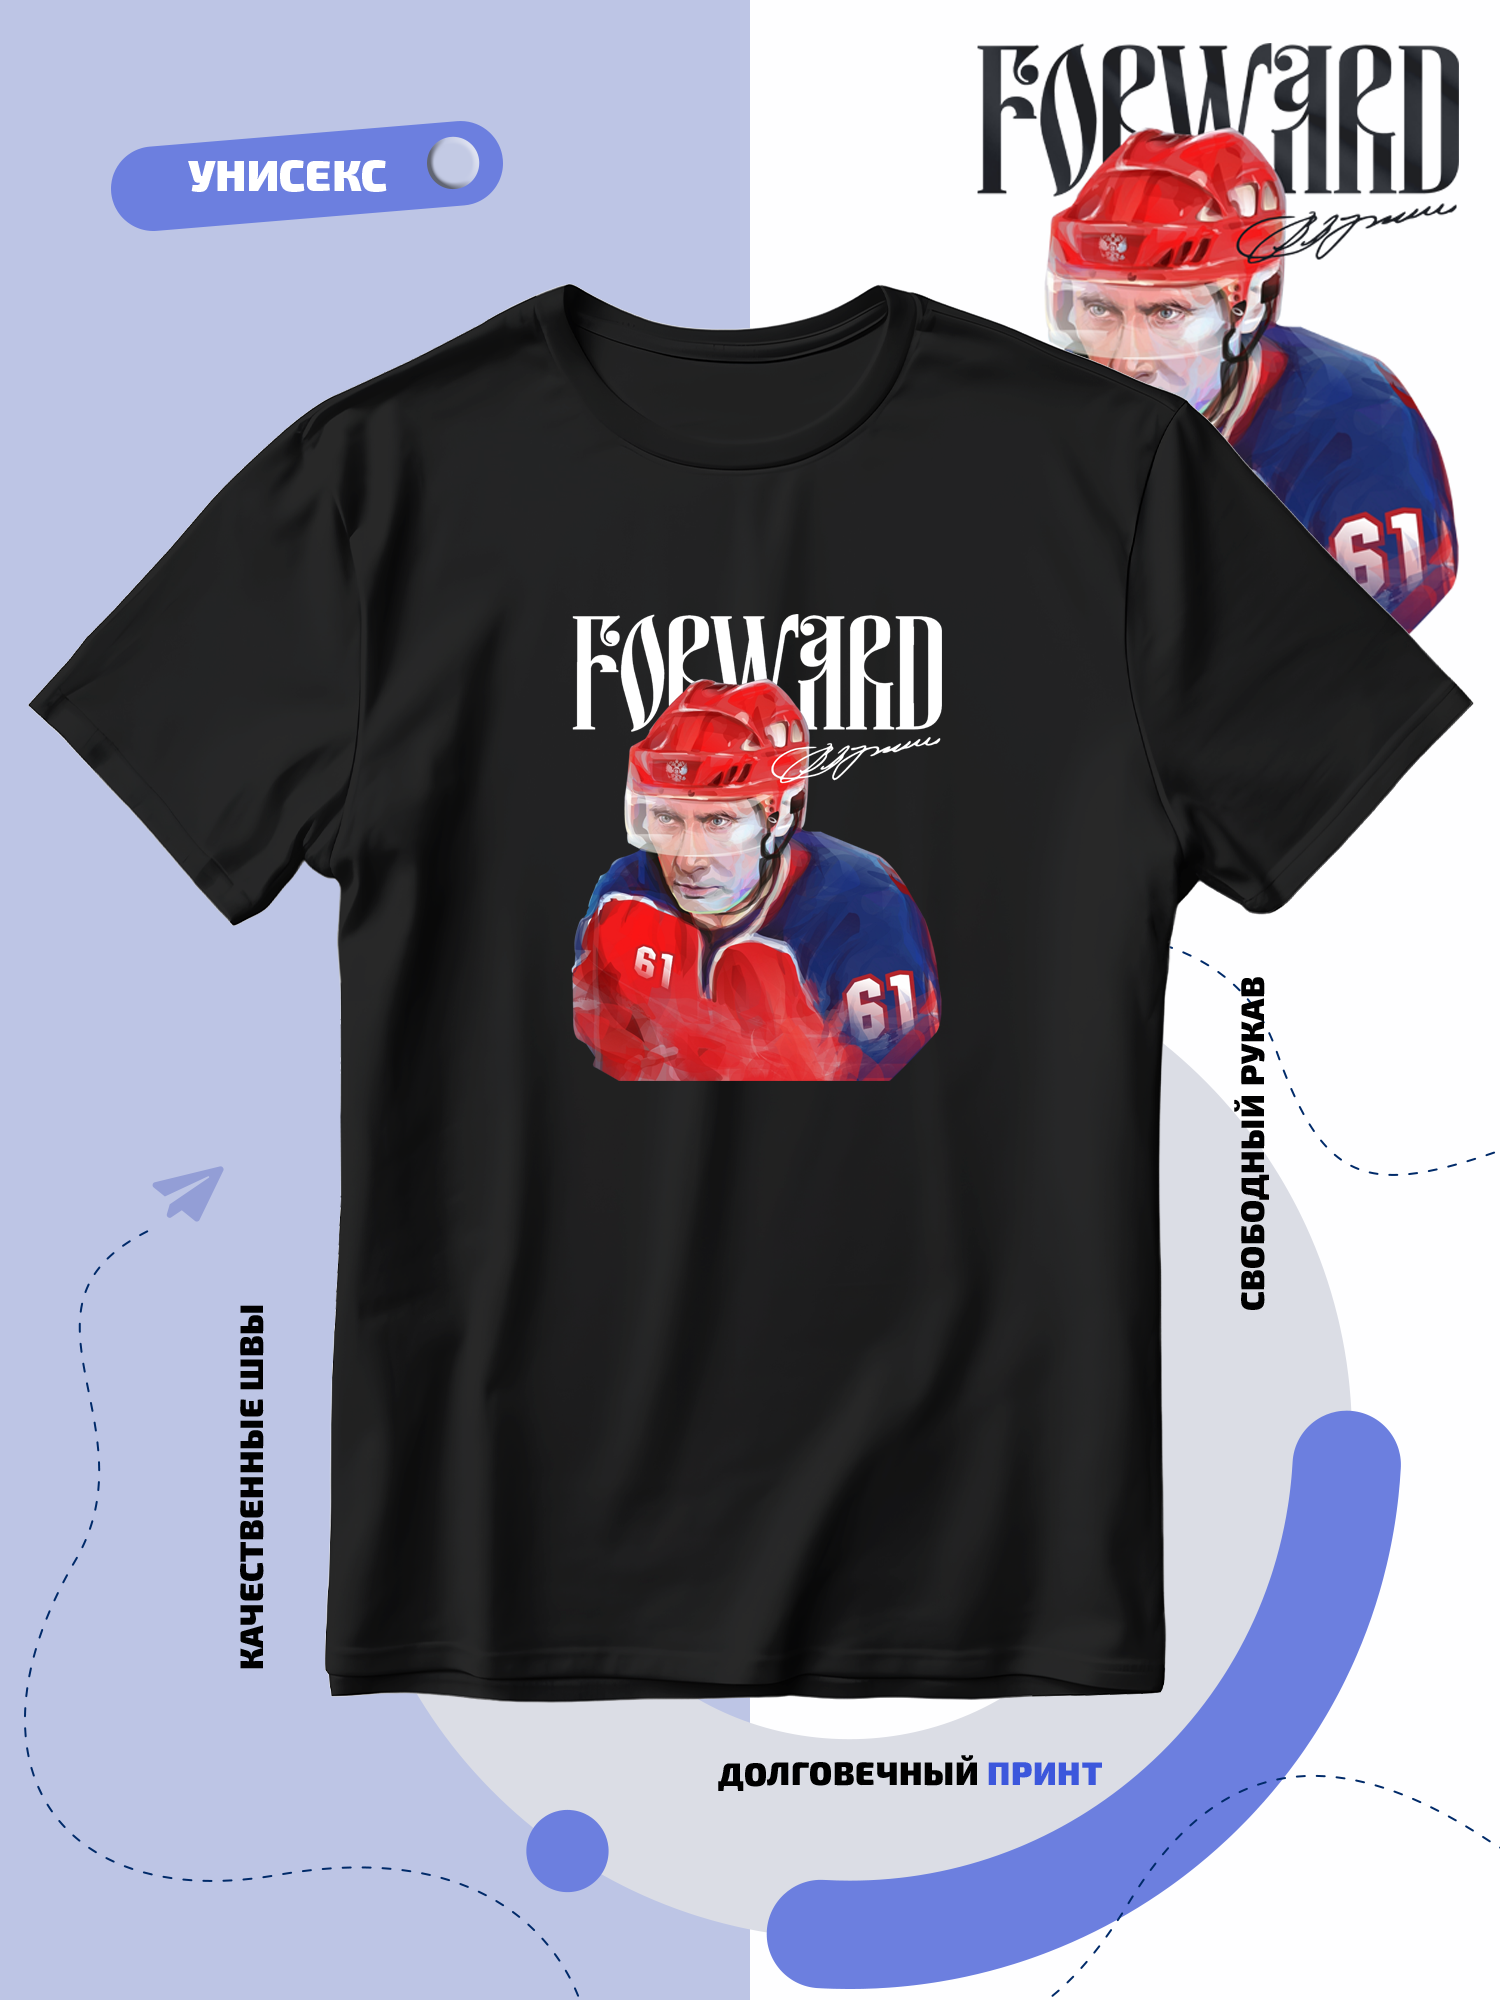 Футболка SMAIL-P Путин Forward в хоккейной форме с автографом